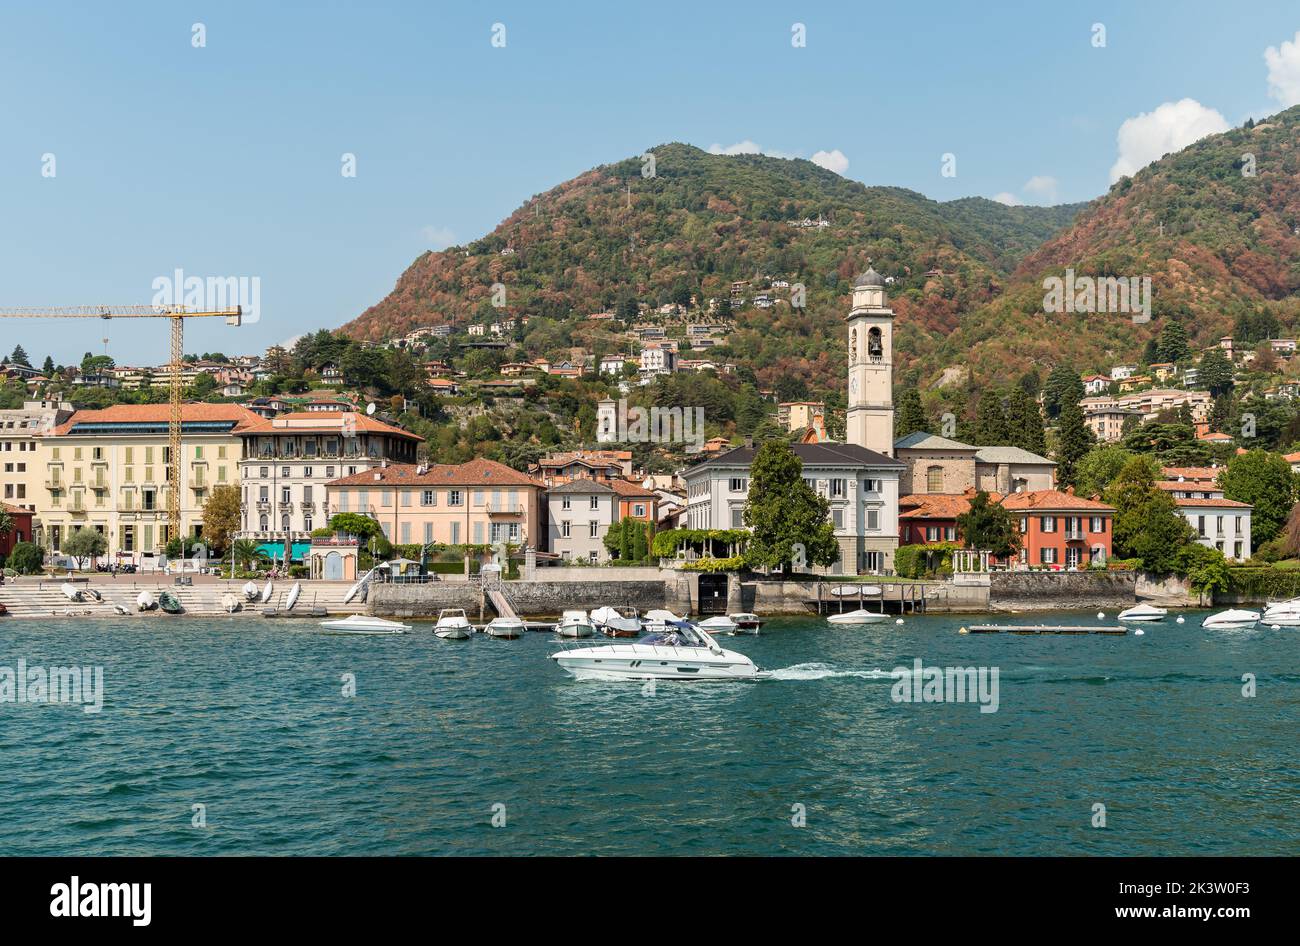 Vue sur le lac de Cernobbio, la station balnéaire populaire sur les rives du lac de Côme, Lombardie, Italie Banque D'Images